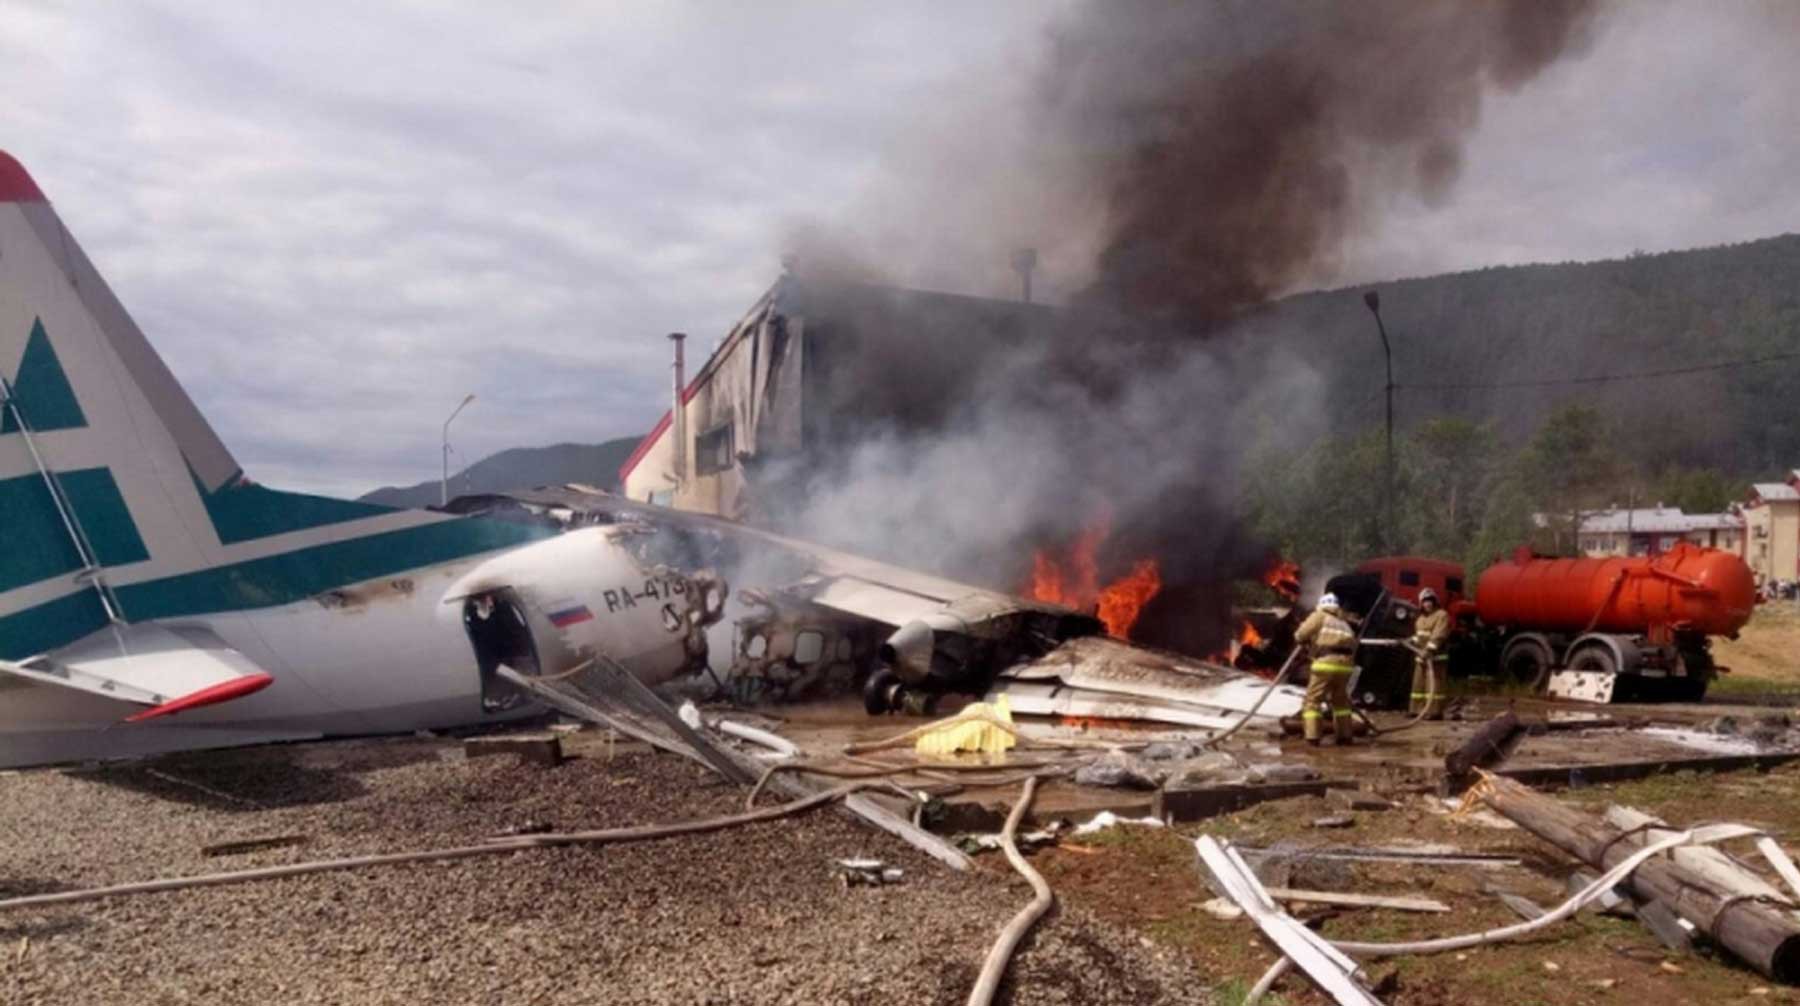 Dailystorm - Два члена экипажа погибли при аварийной посадке пассажирского Ан-24 в Бурятии